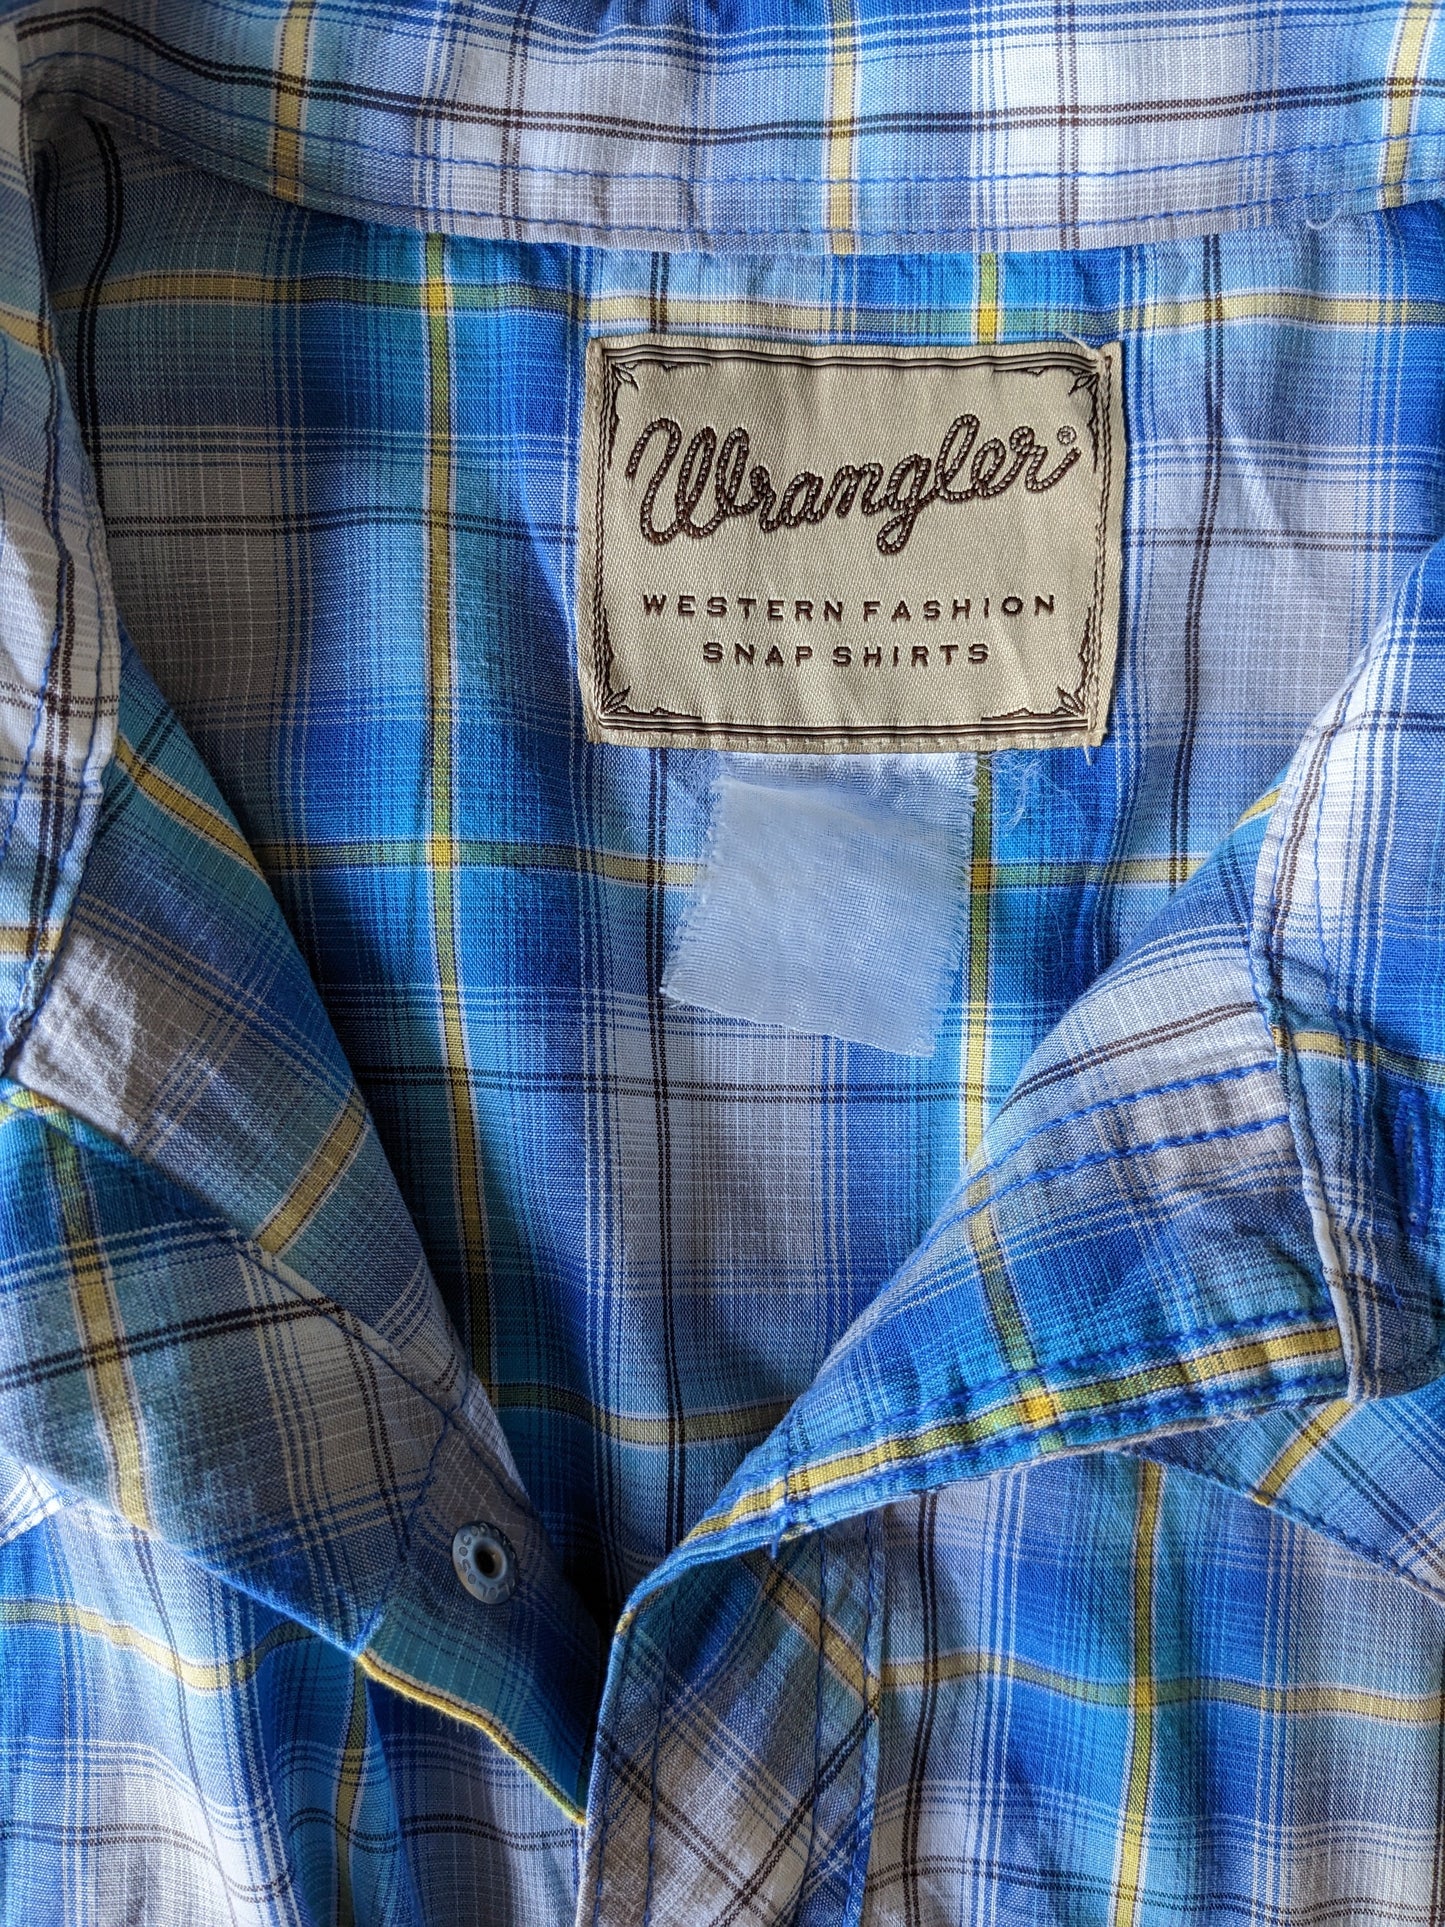 Wrangler Western Shirt Kurzärmel mit Pressebutter. Blau gelb weiße karierte. Größe xxl / 2xl.